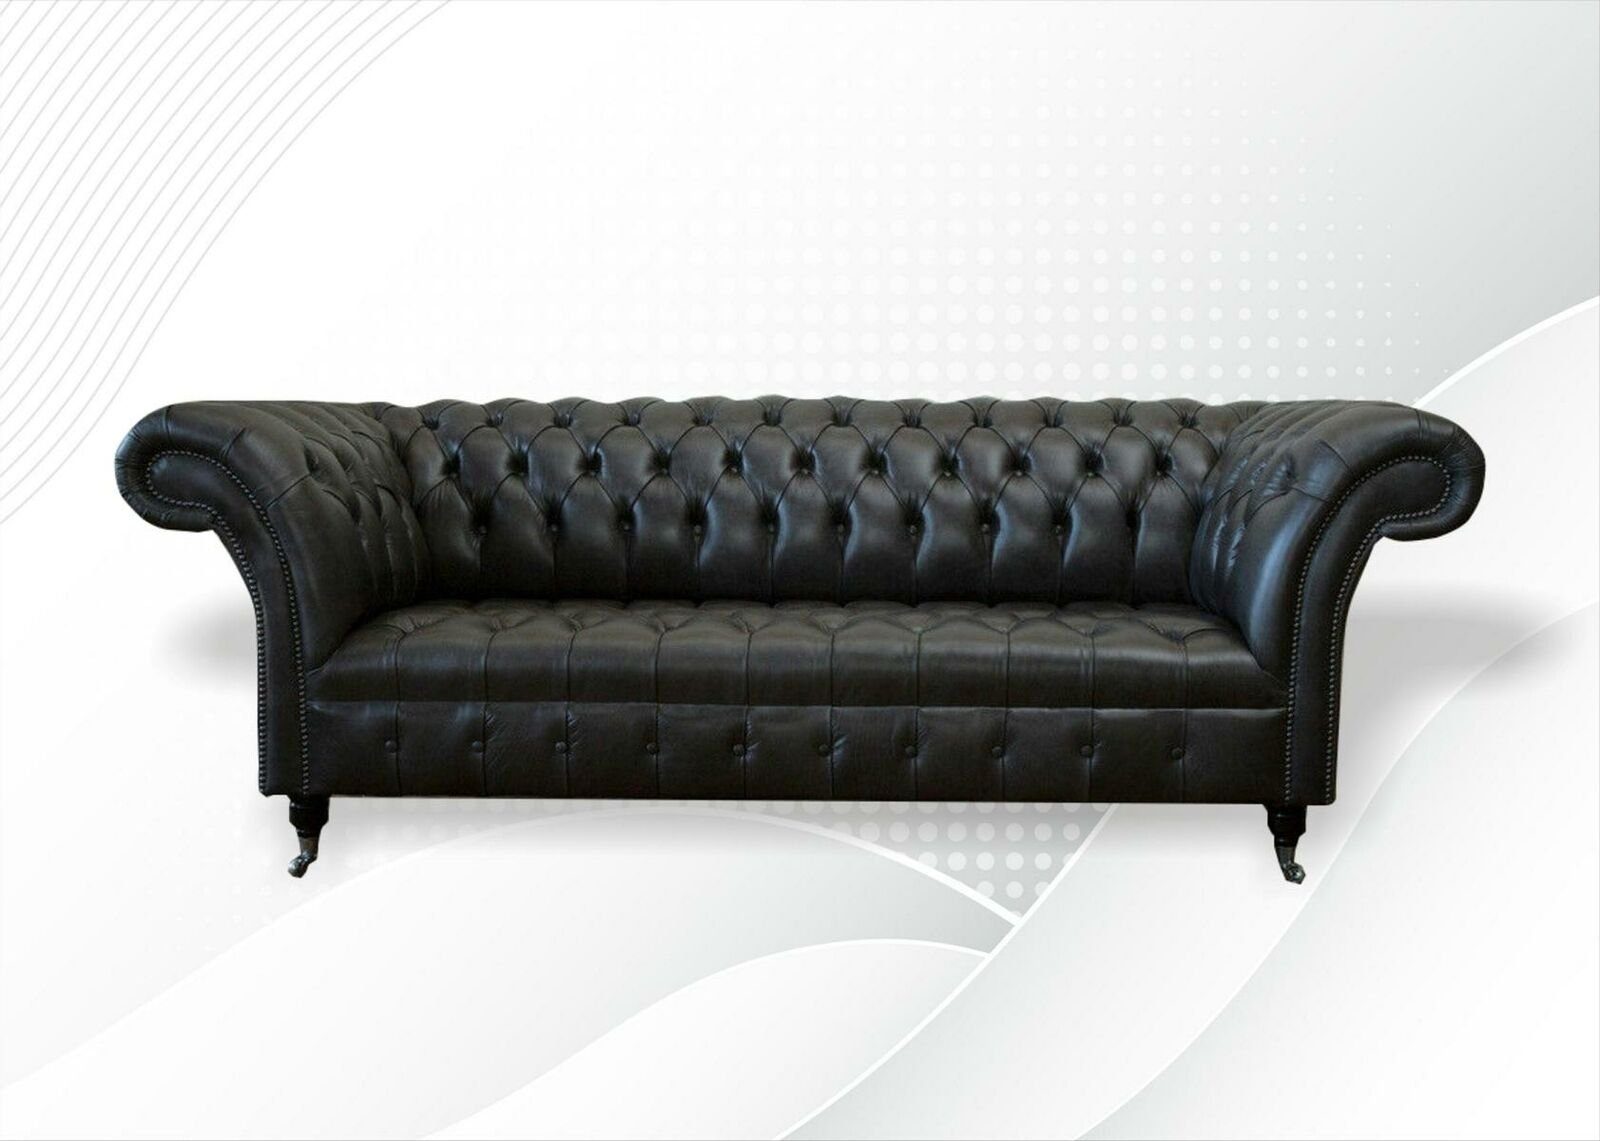 JVmoebel Sofa Schwarzer Chesterfield Dreisitzer Polster 3-er Couch Neu, Made in Europe